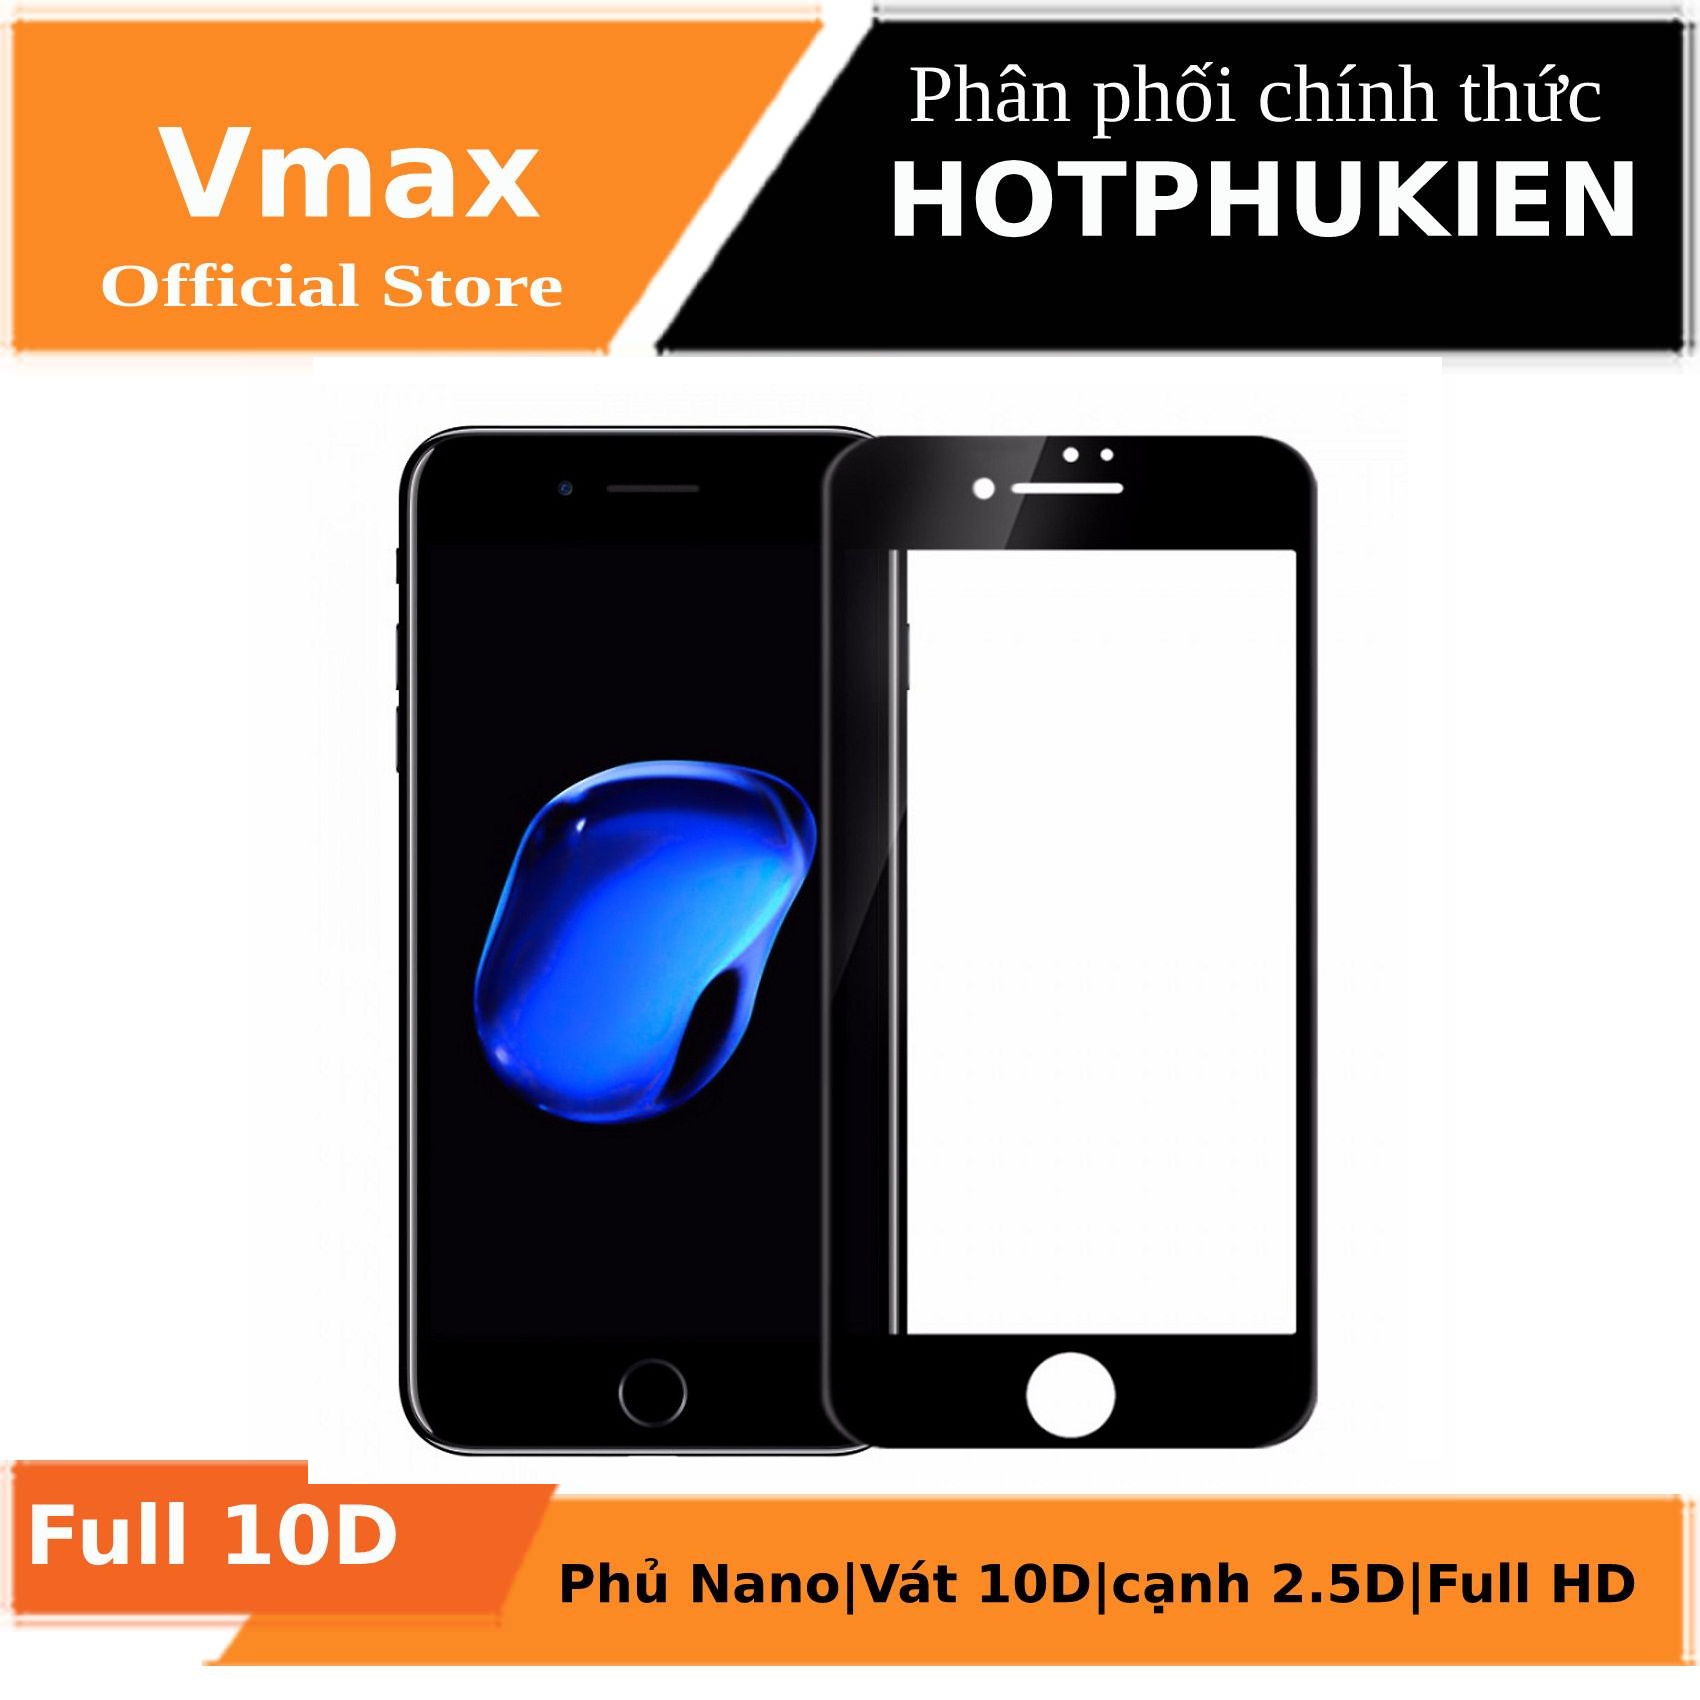 Miếng dán kính cường lực Full 10D cho iPhone 6 Plus / iPhone 6s Plus hiệu Vmax